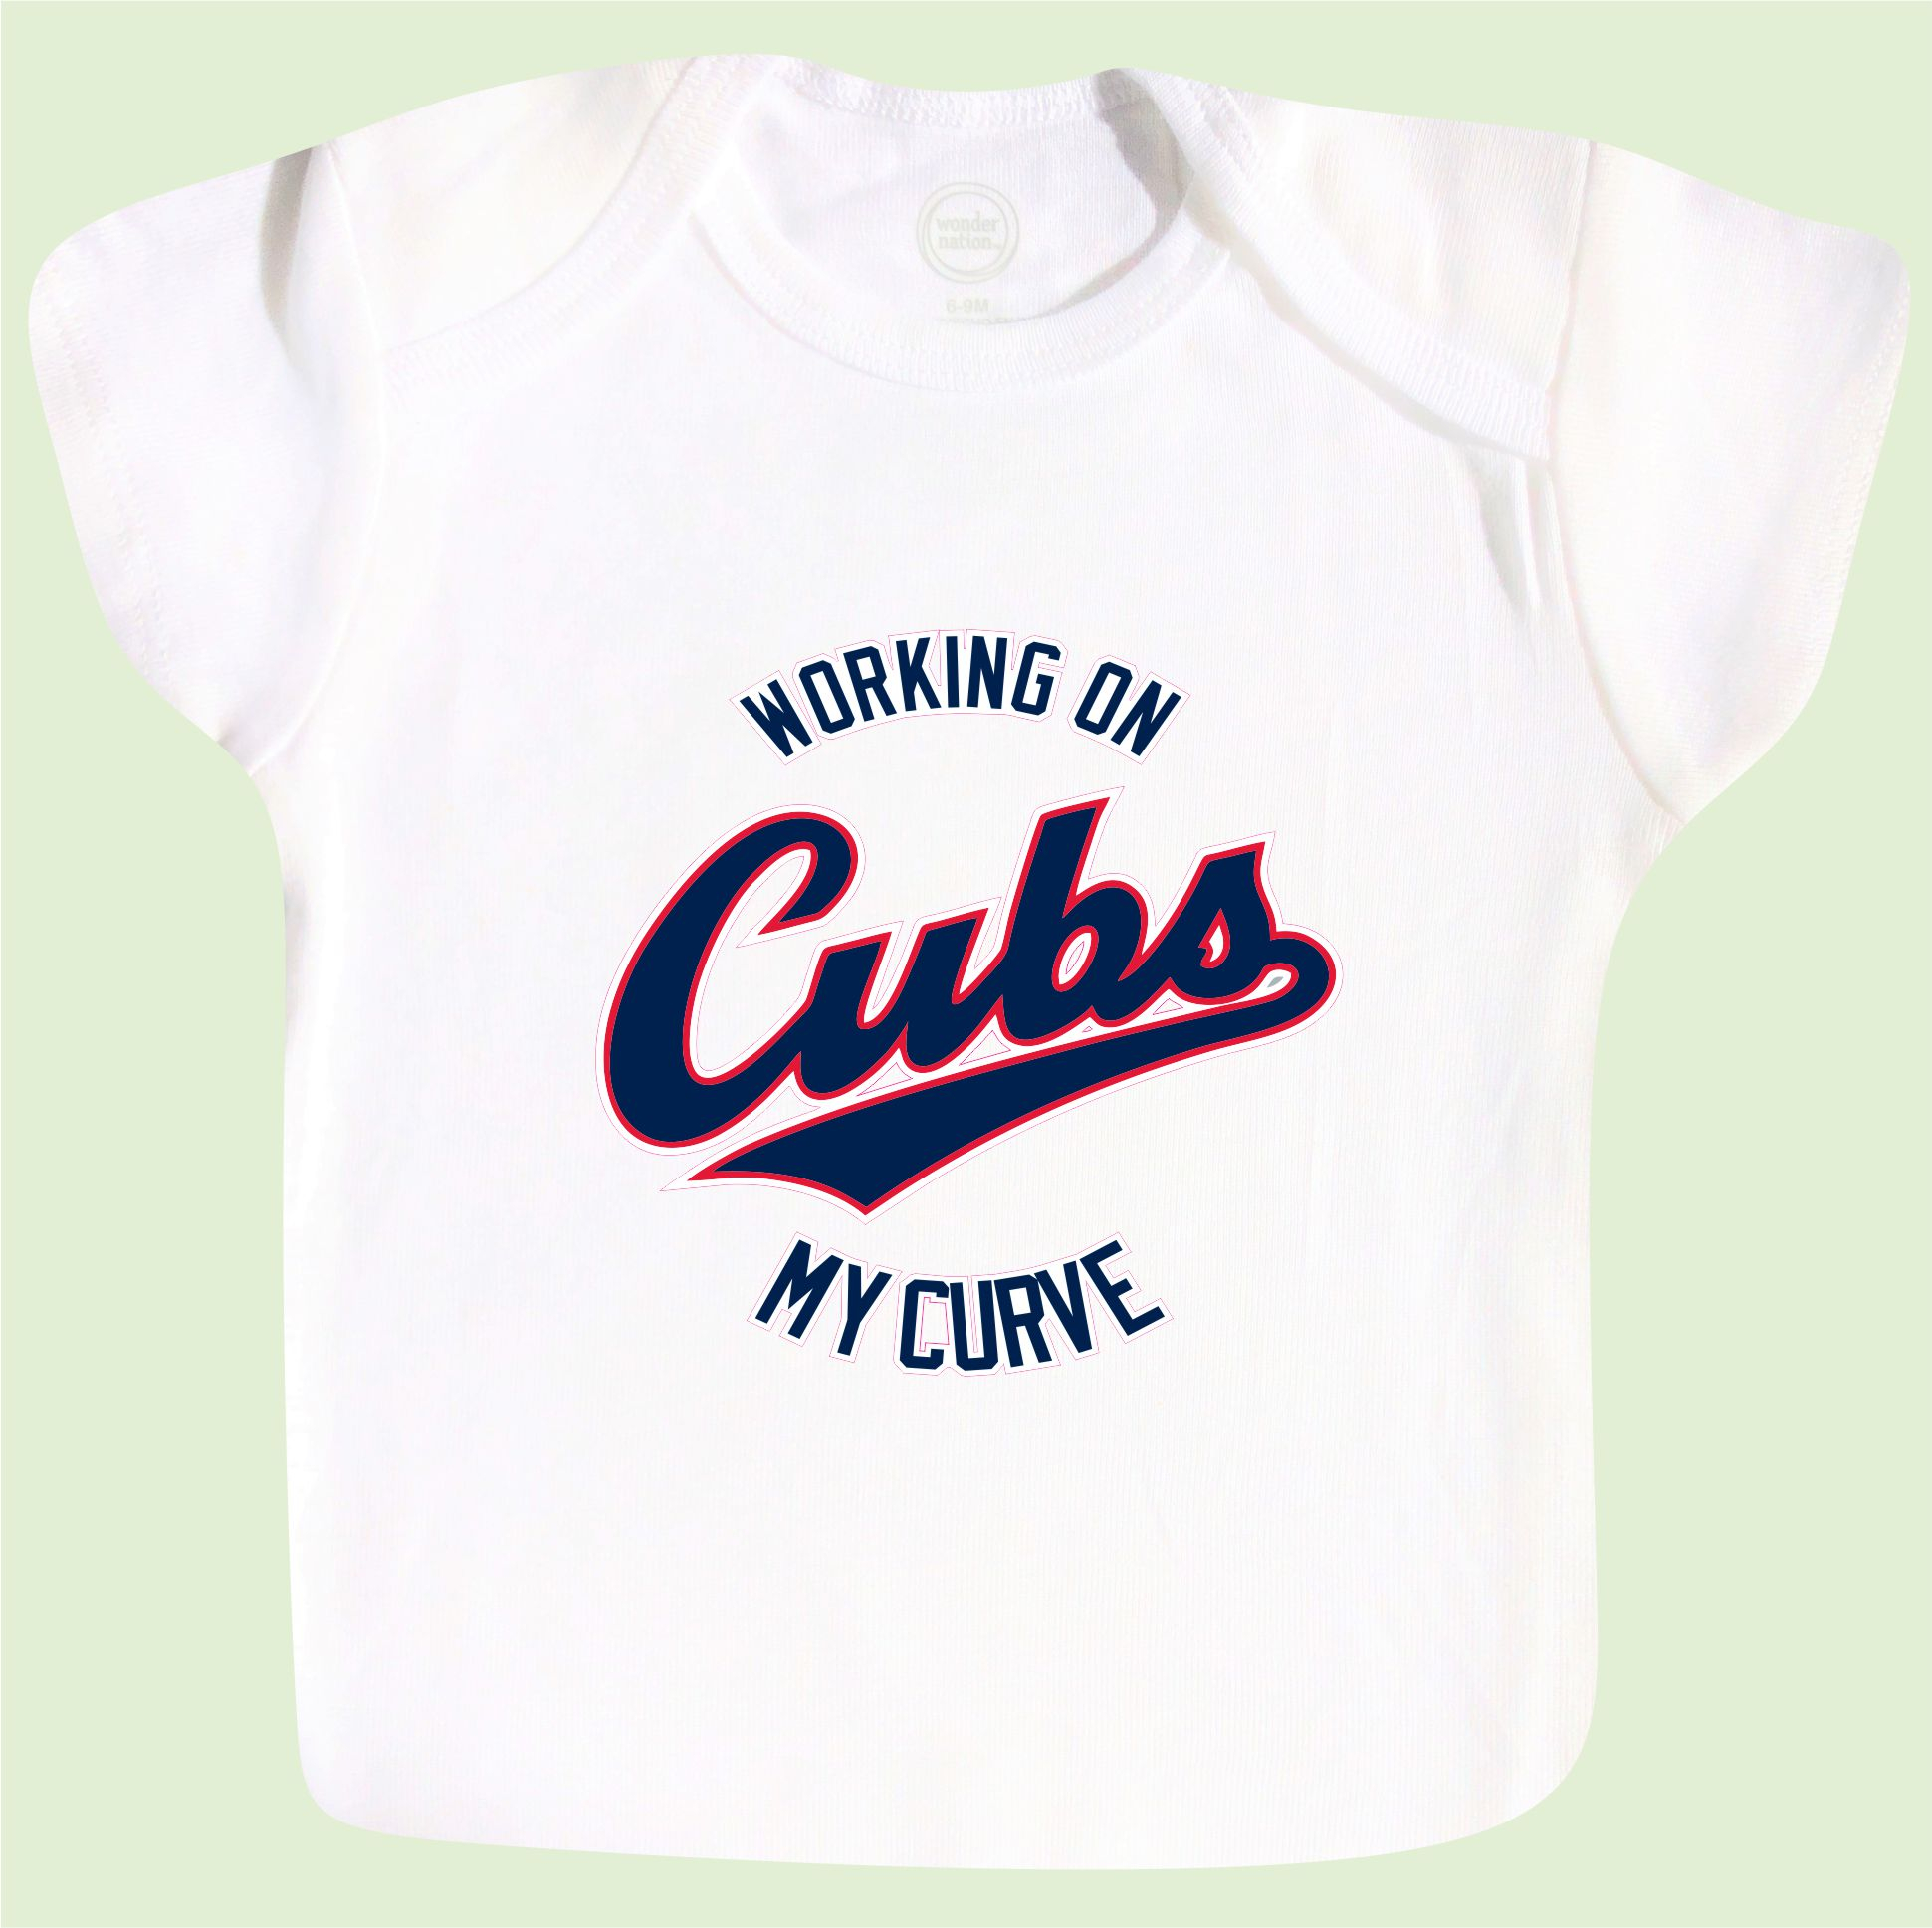 Cubs Toddler Shirt 